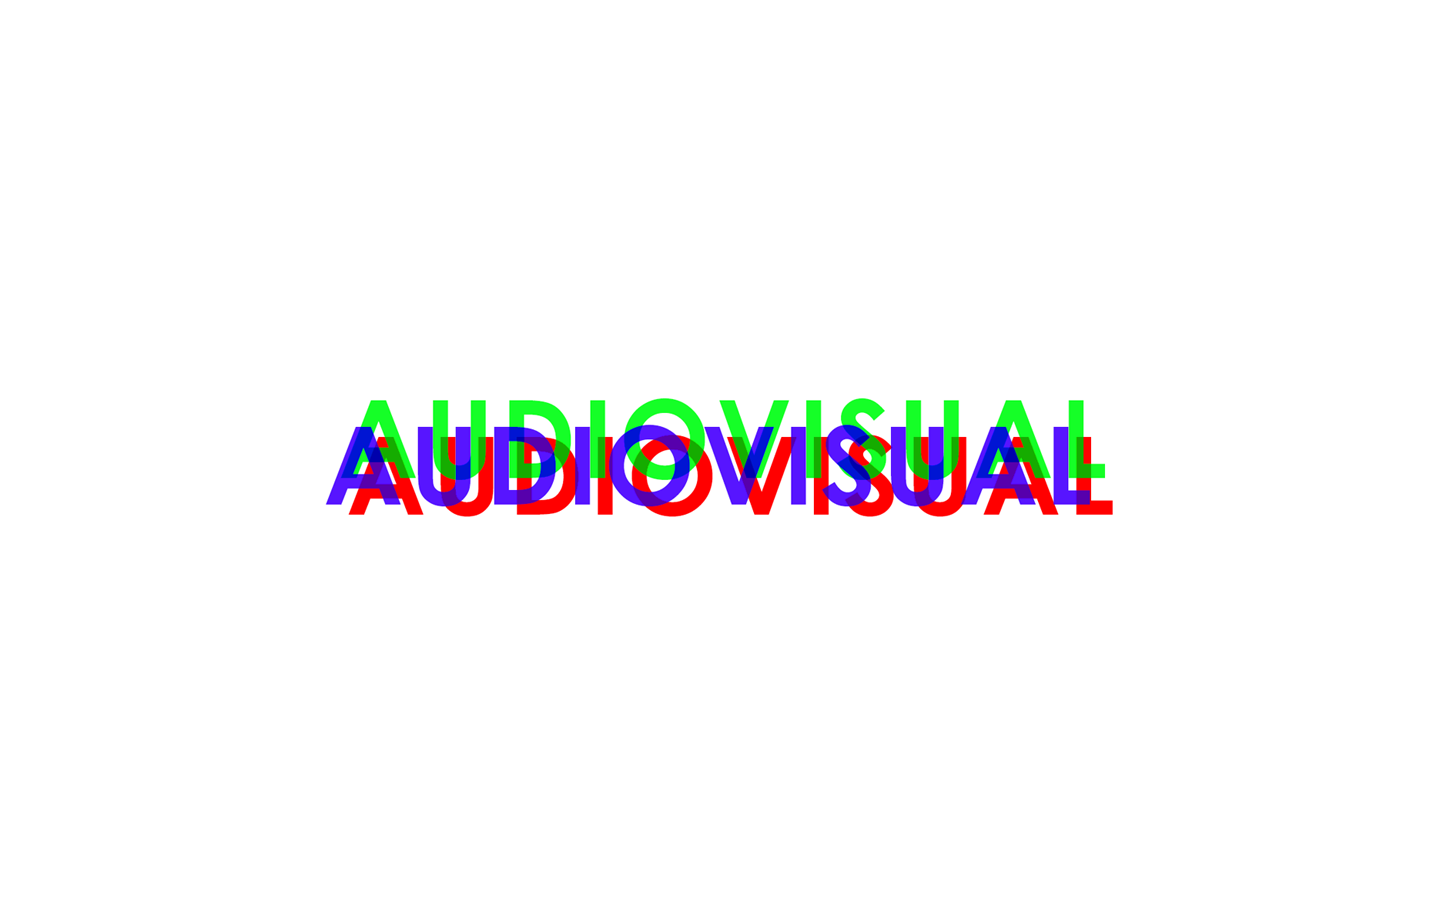 Texto audiovisual com três cores